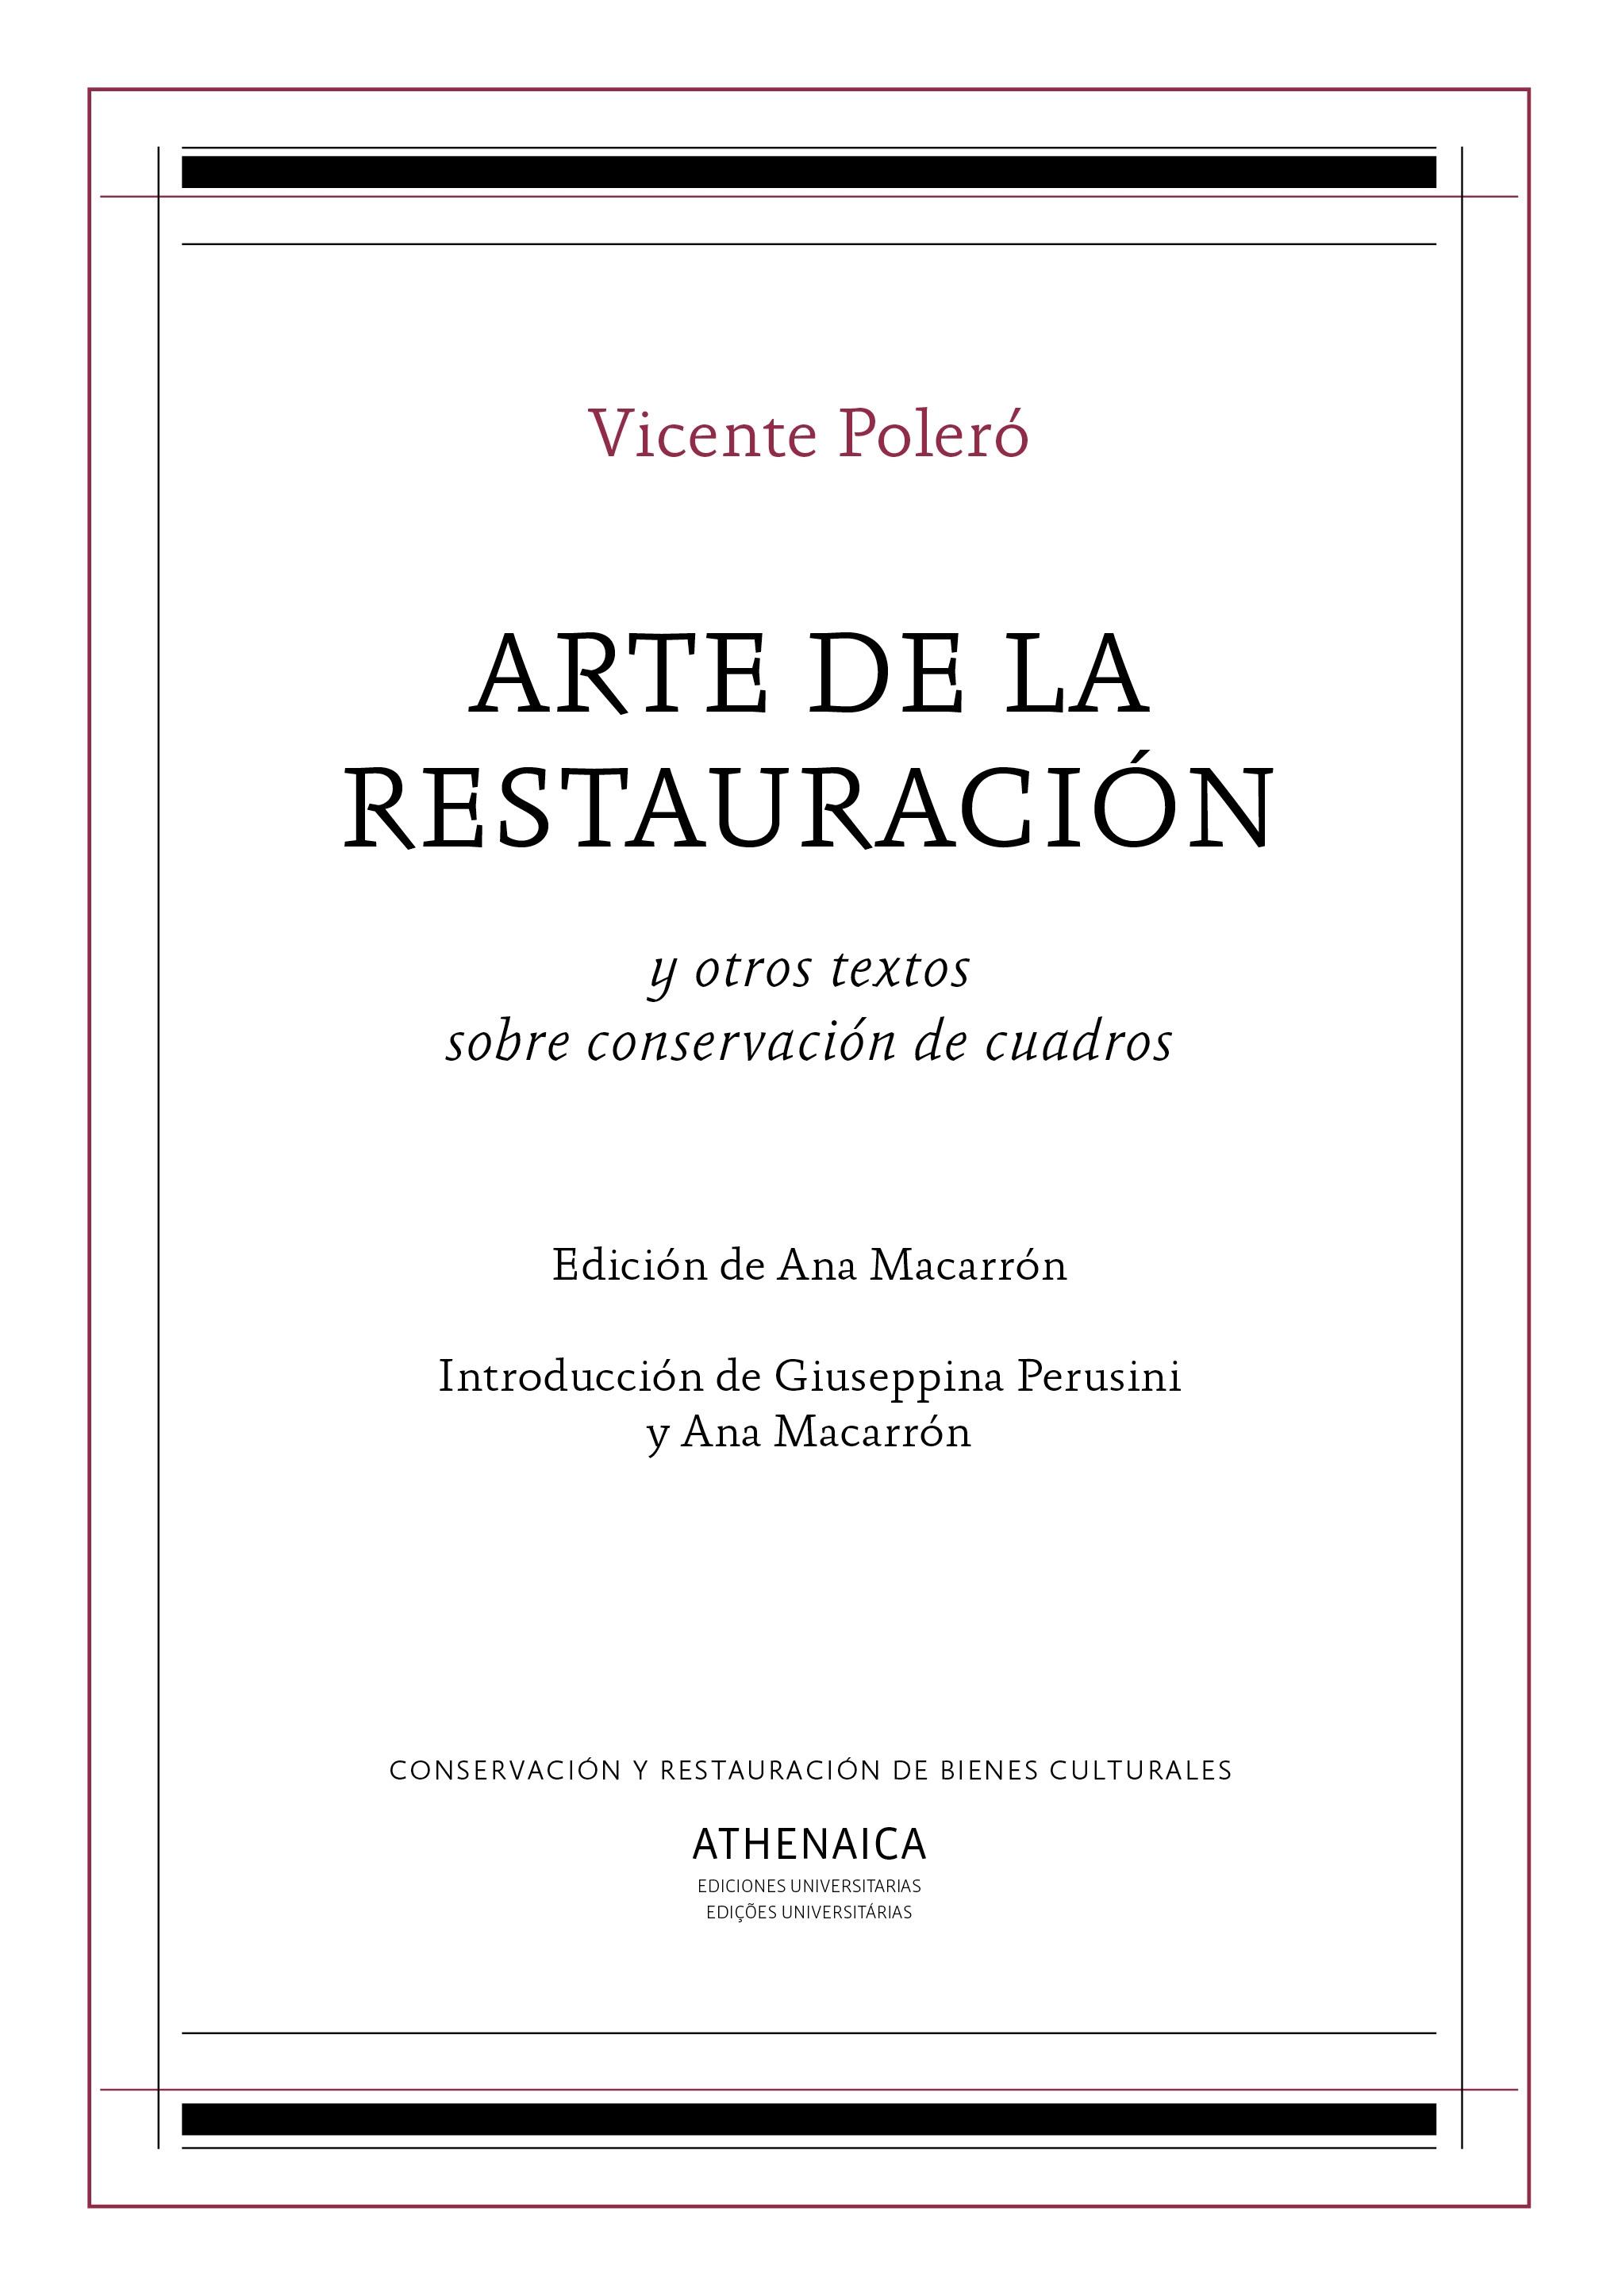 ARTE DE LA RESTAURACIÓN "y otros textos sobre conservación de cuadros"